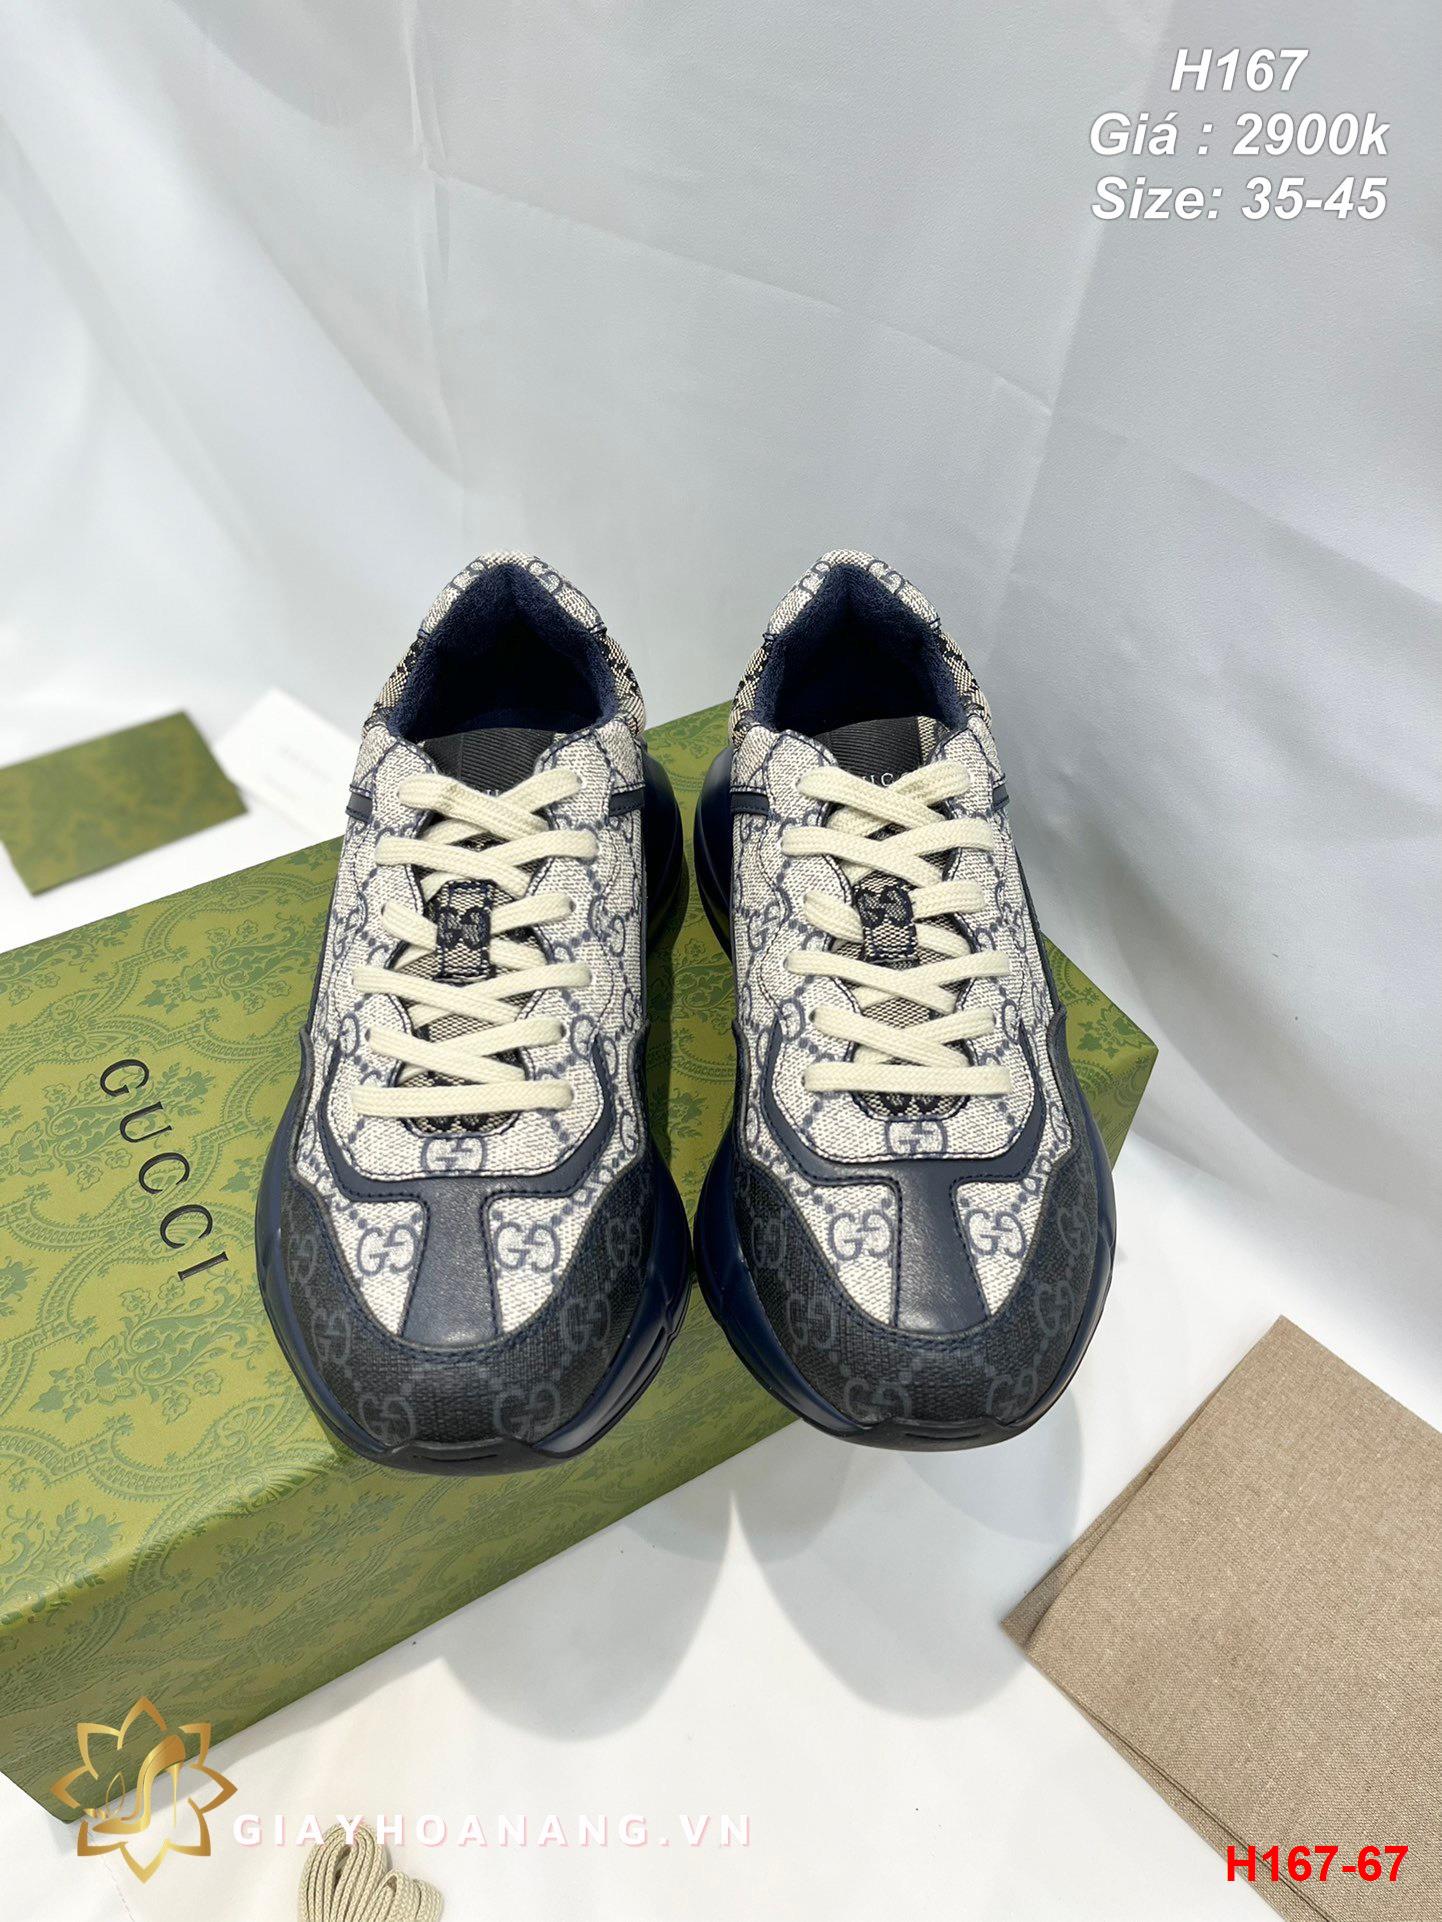 H167-67 Gucci giày thể thao siêu cấp